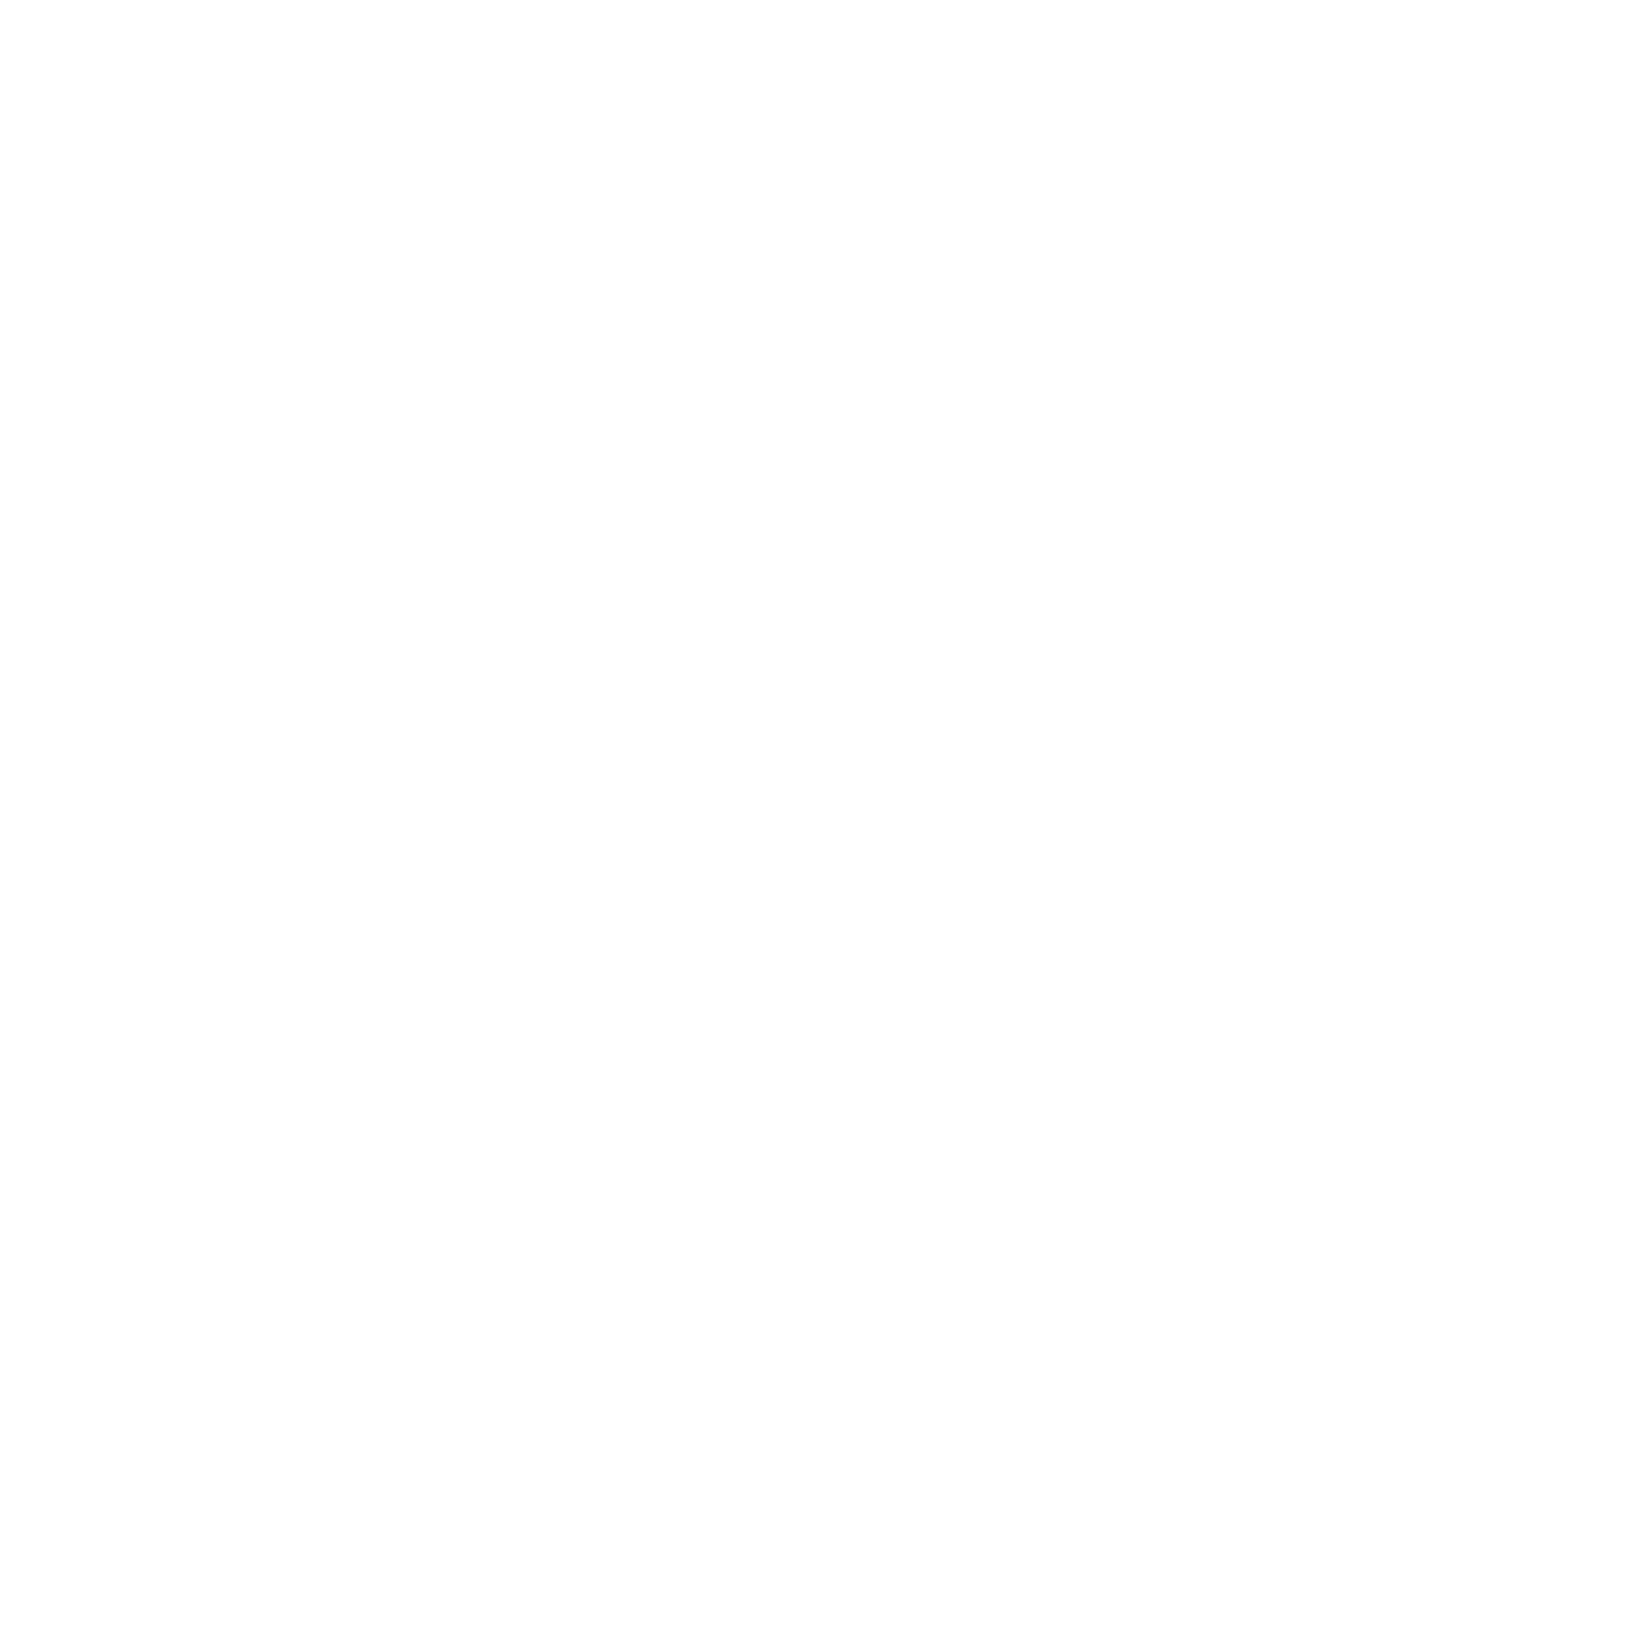 Becuz I Matter - Leadership Coaching - Ann Fogolin Logo Brandstamp Circular Flower White